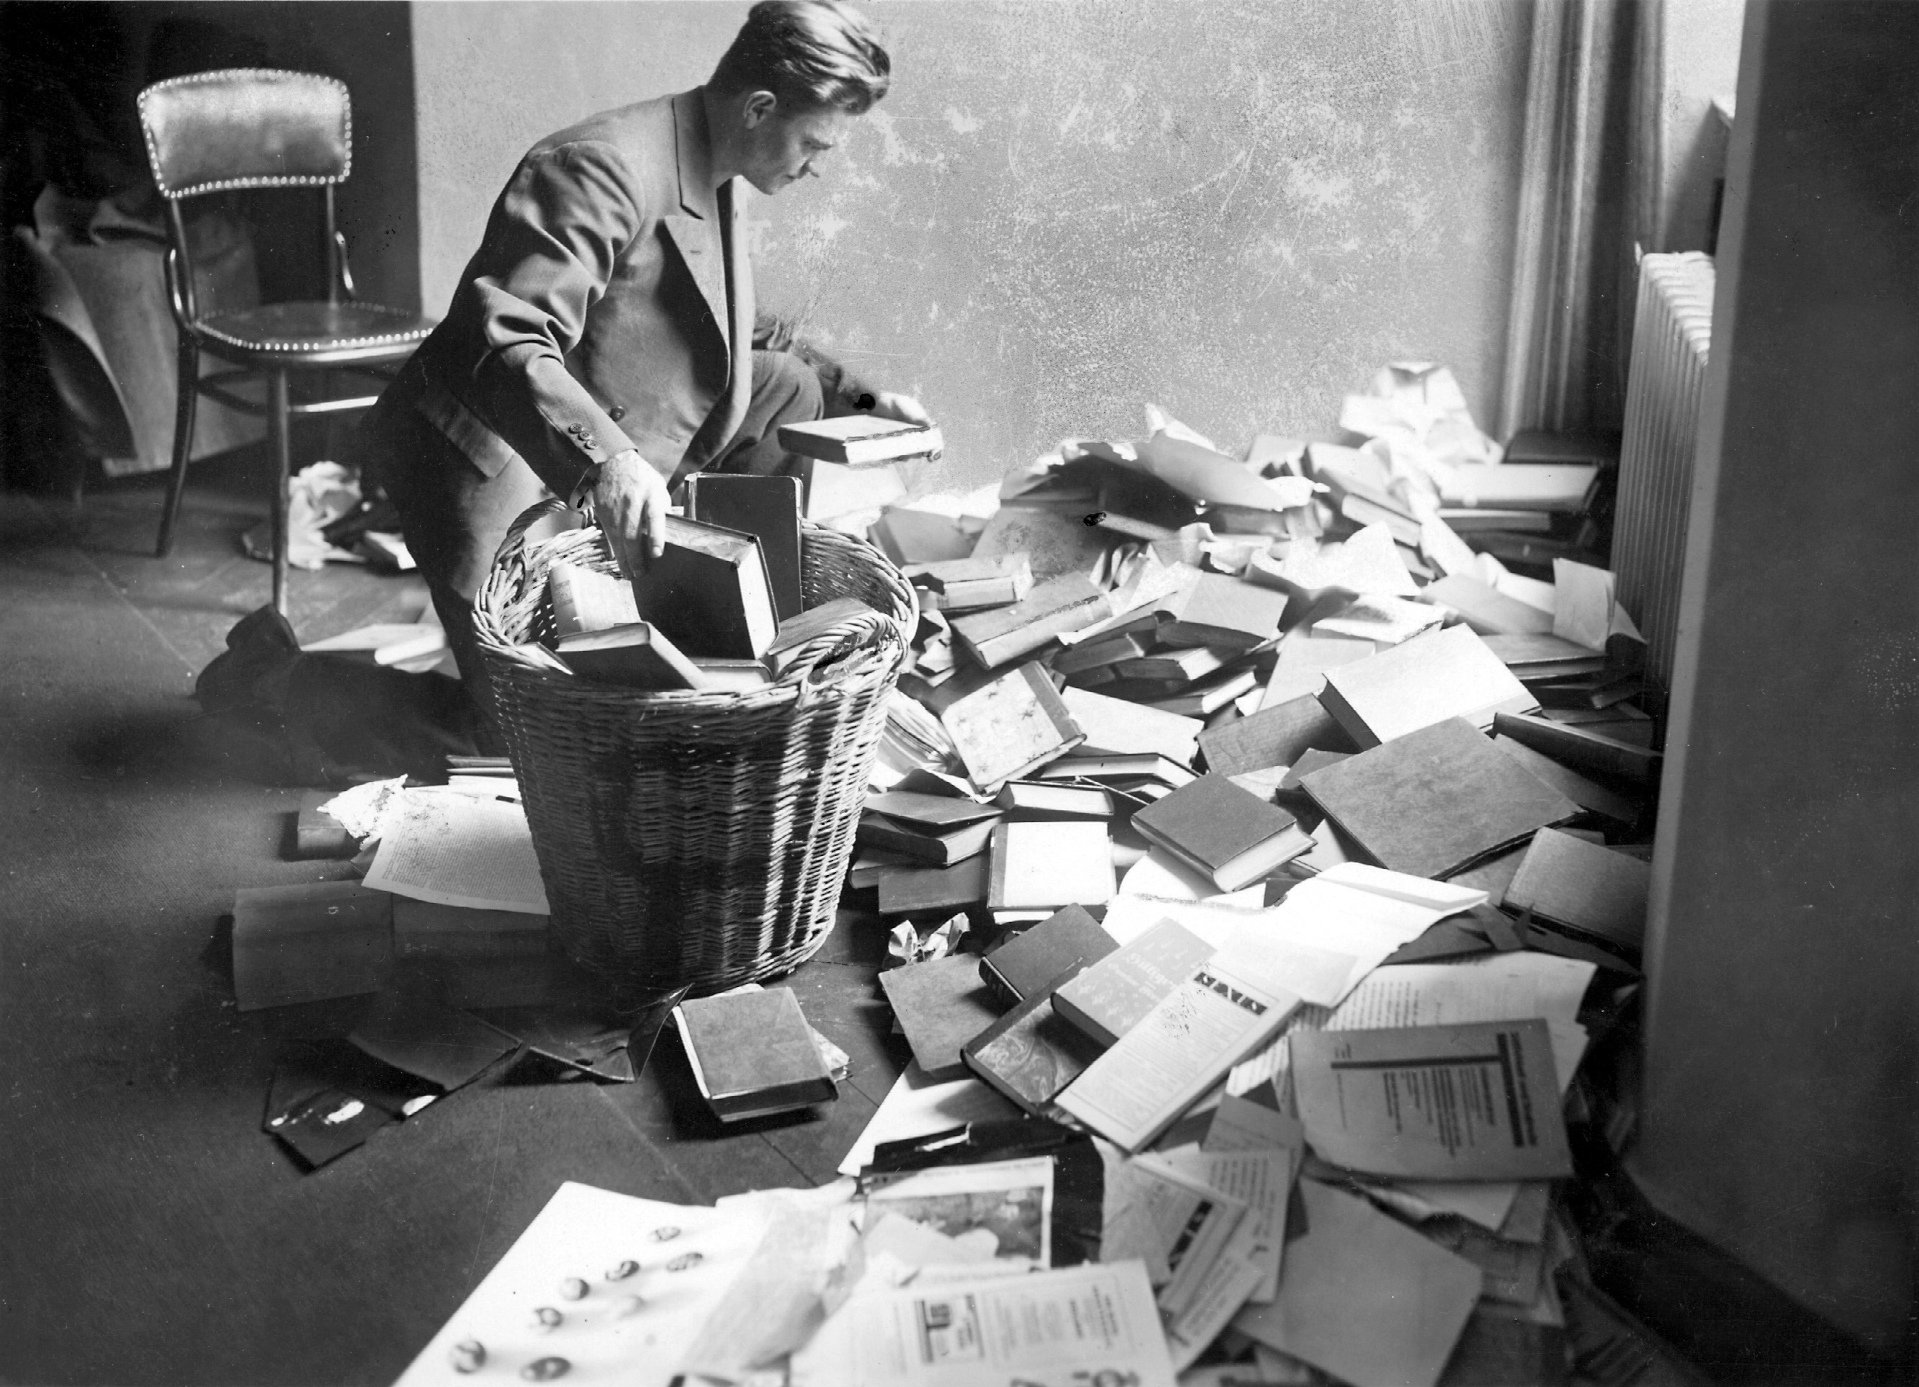 Ein Student steht in einem Zimmer vor einem Haufen von auf den Boden geworfenen Büchern und Schriften und wirft sie in einen großen Papierkorb.